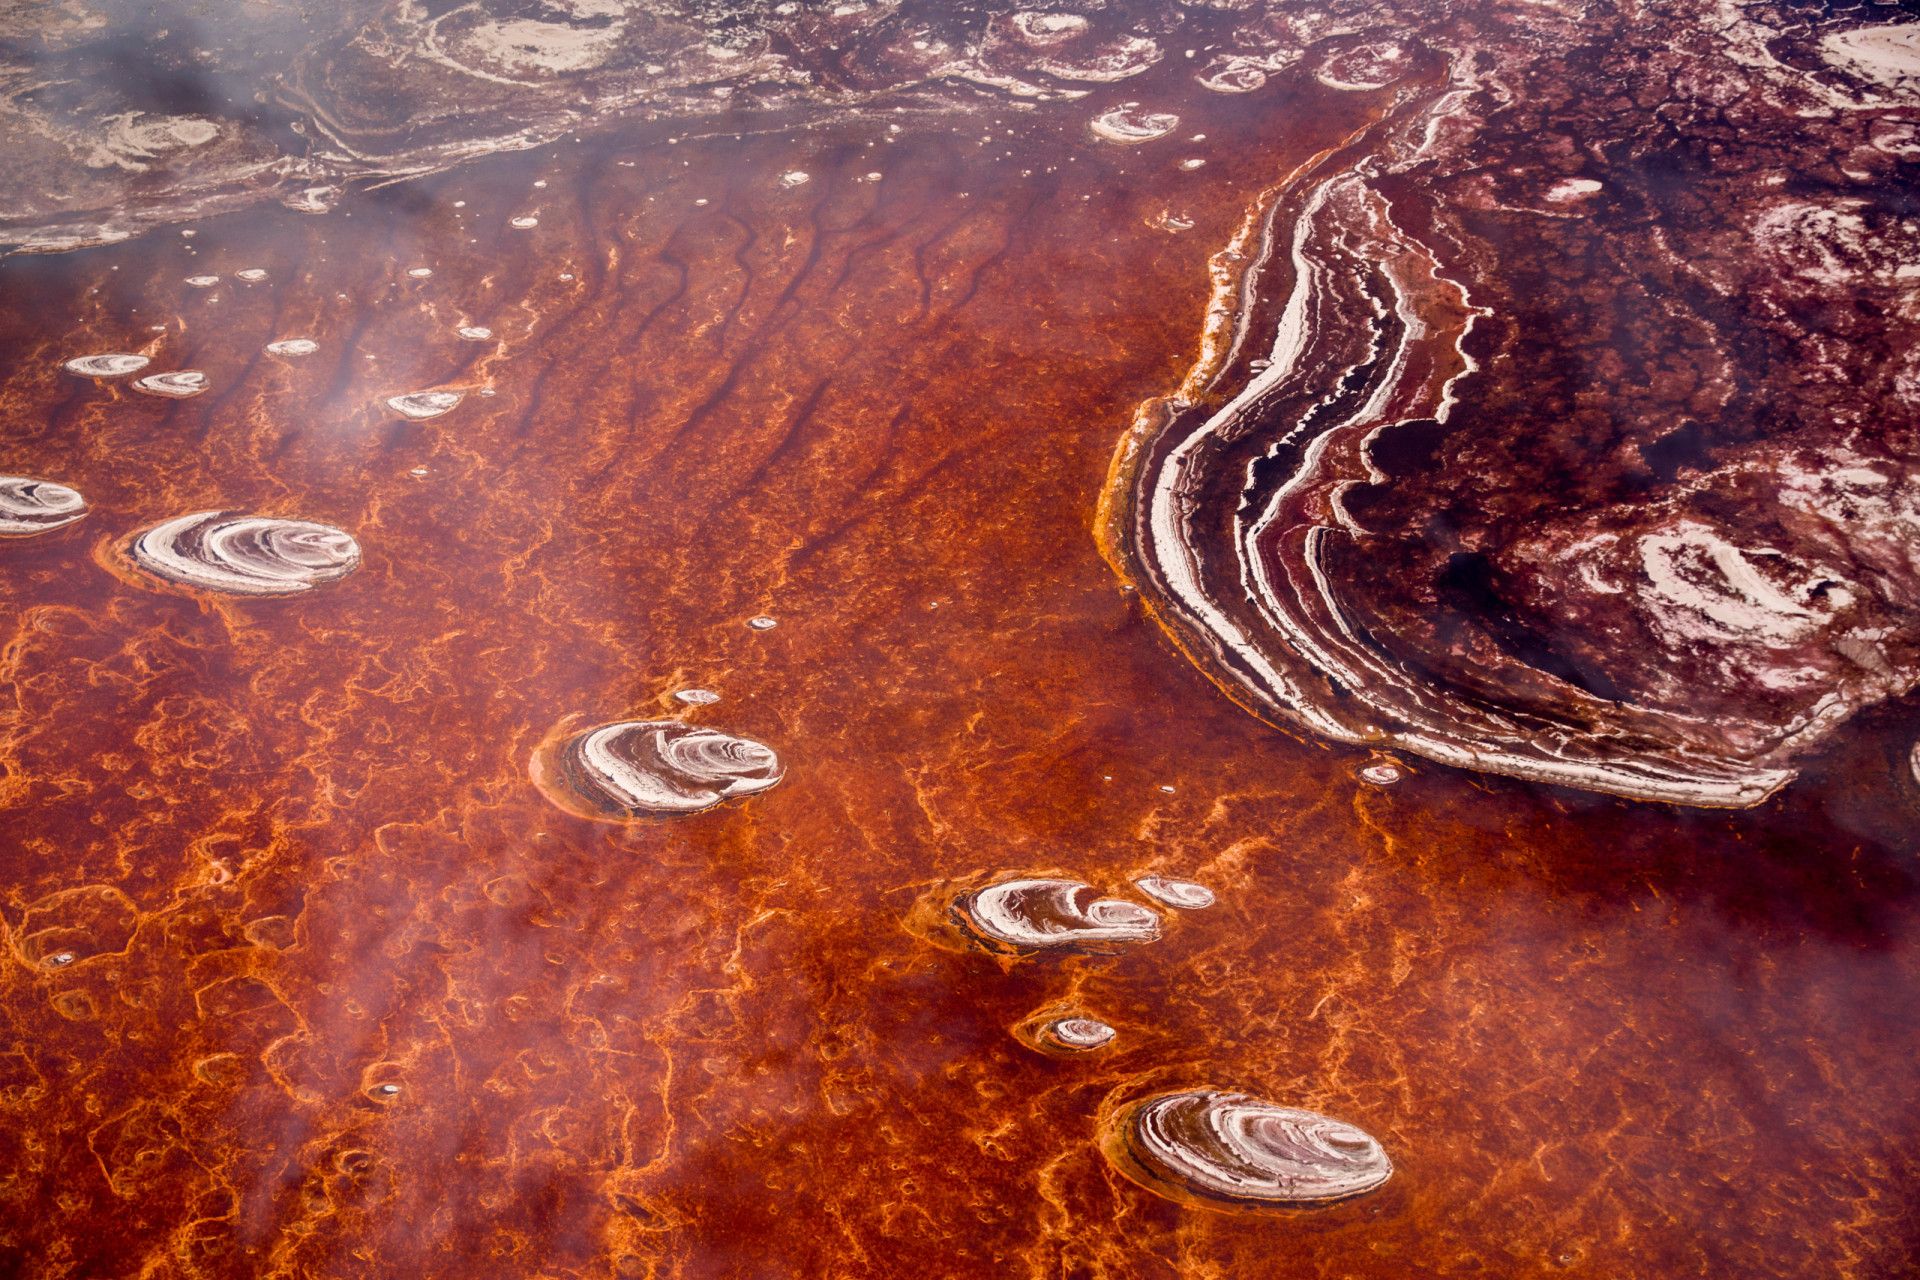 <p>Le lac Natron est si caustique qu'il ressemble à de la rouille liquide vu du ciel. L'alcalinité du lac peut atteindre un pH supérieur à 12 et la température de l'eau peut parfois atteindre 60°C. Donc vous l'aurez compris, ce n'est pas un endroit idéal pour faire trempette !</p>